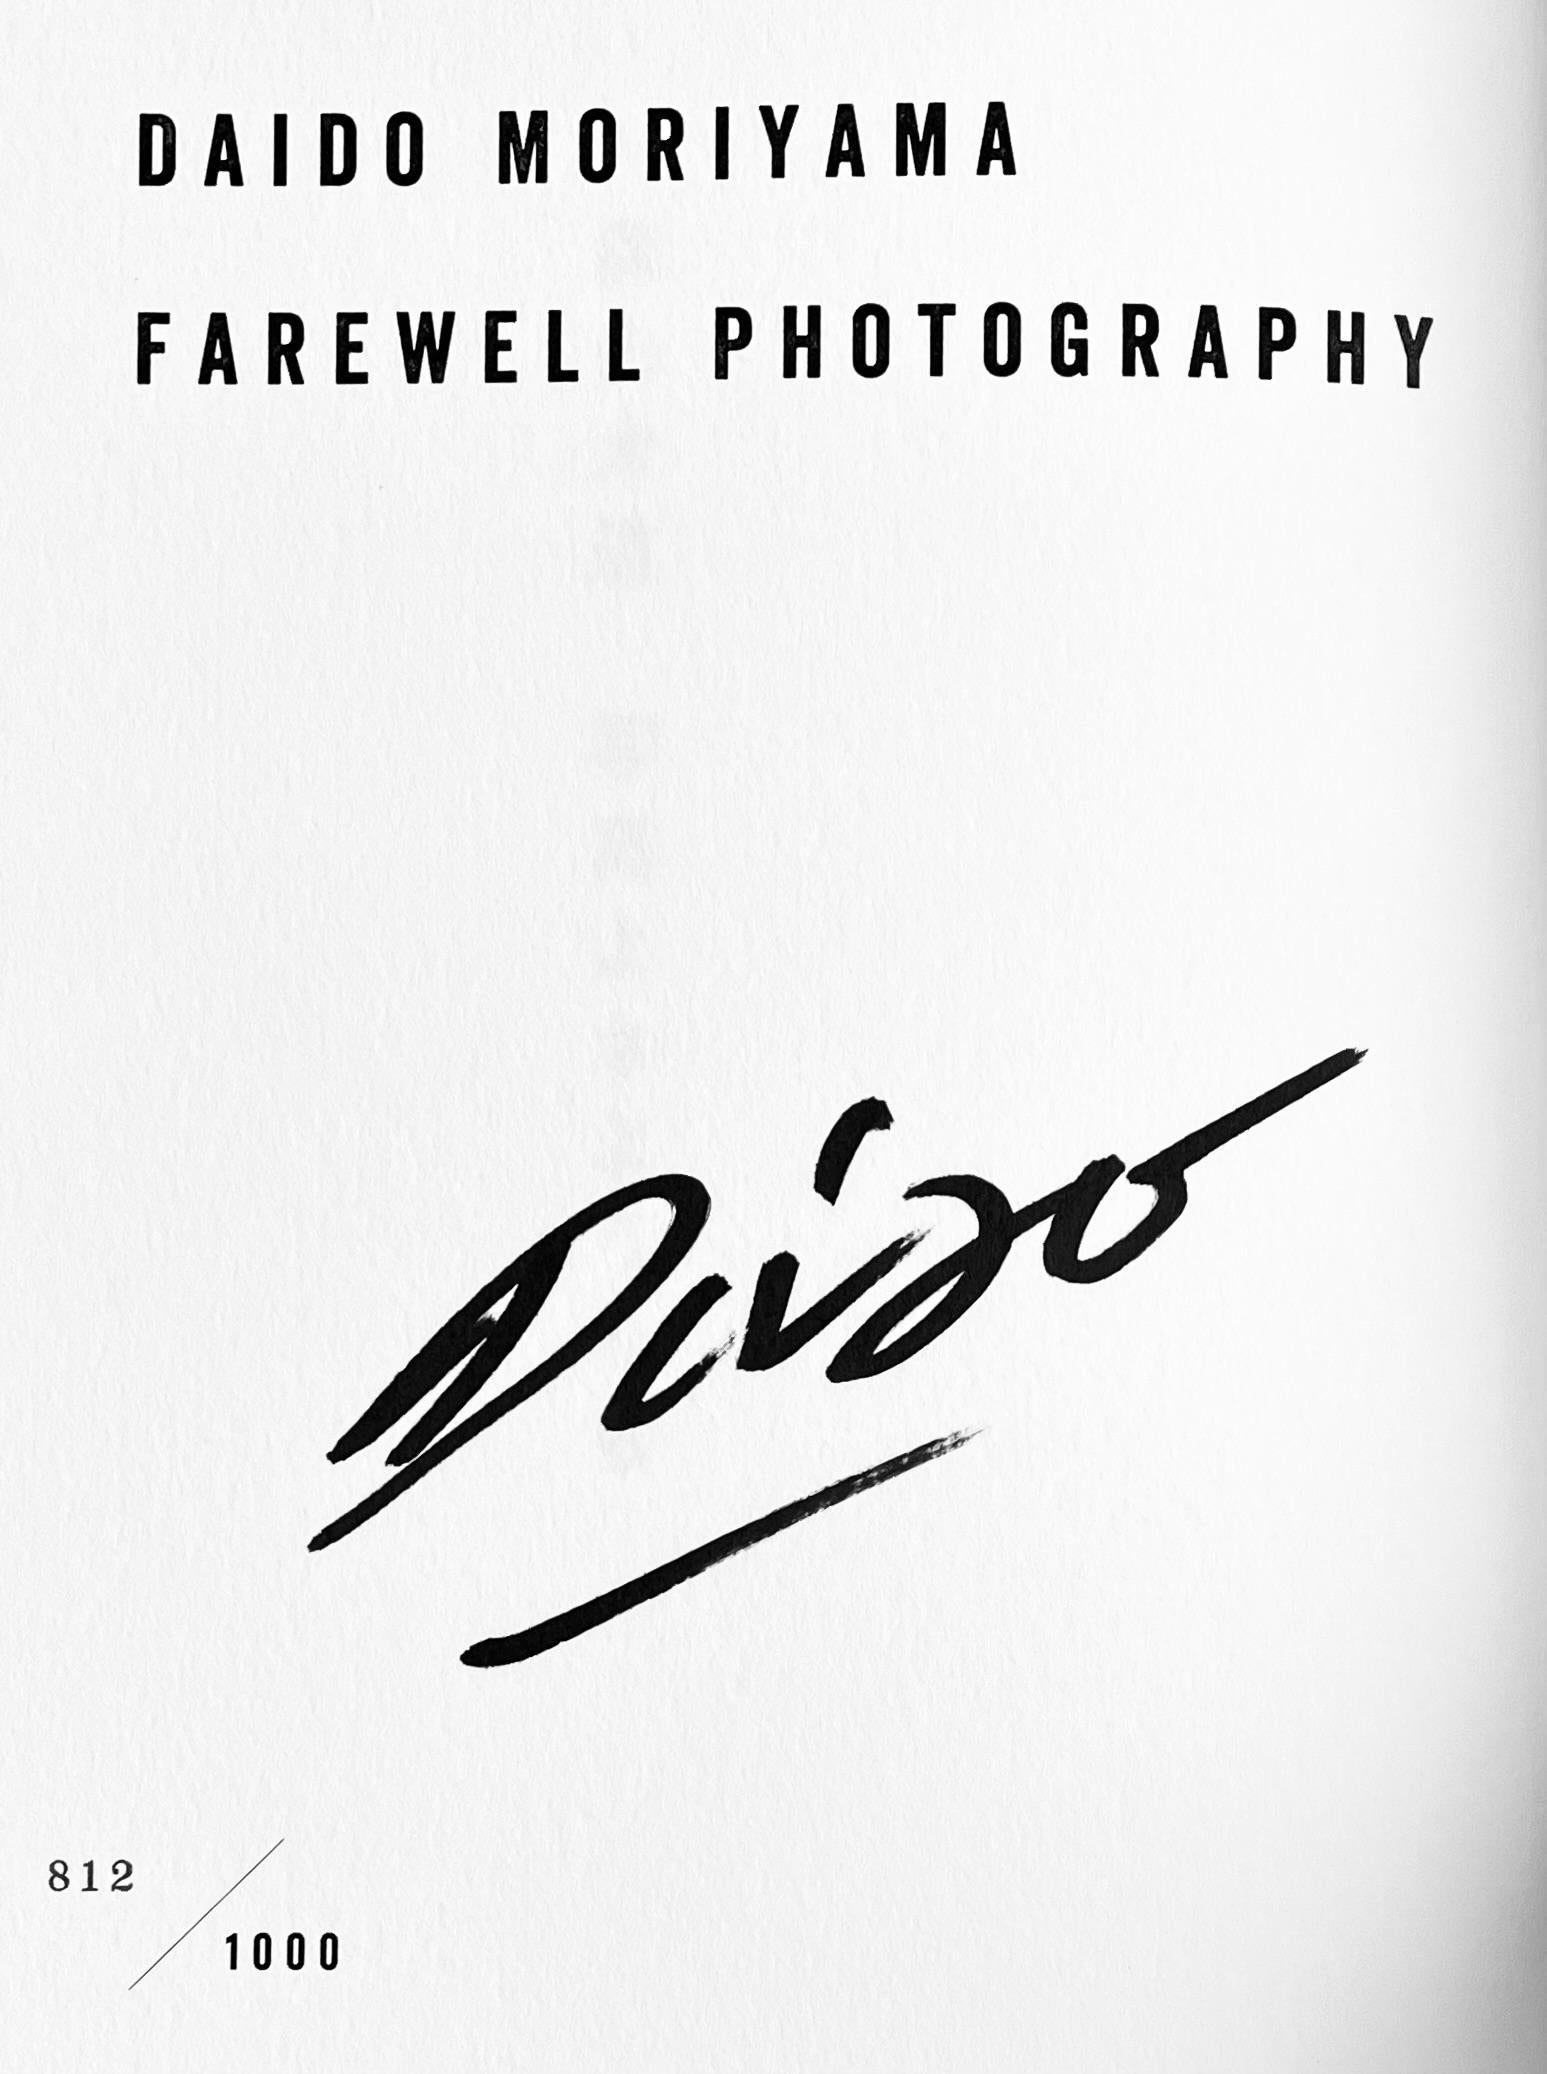 Livre d'artiste signé de Daido Moriyama : Daido Moriyama Farewell Photography : 

Le livre de Daido Moriyama, Farewell Photography, publié en 1972, est l'un des livres de photographie les plus influents jamais publiés. Cette réédition saisissante et